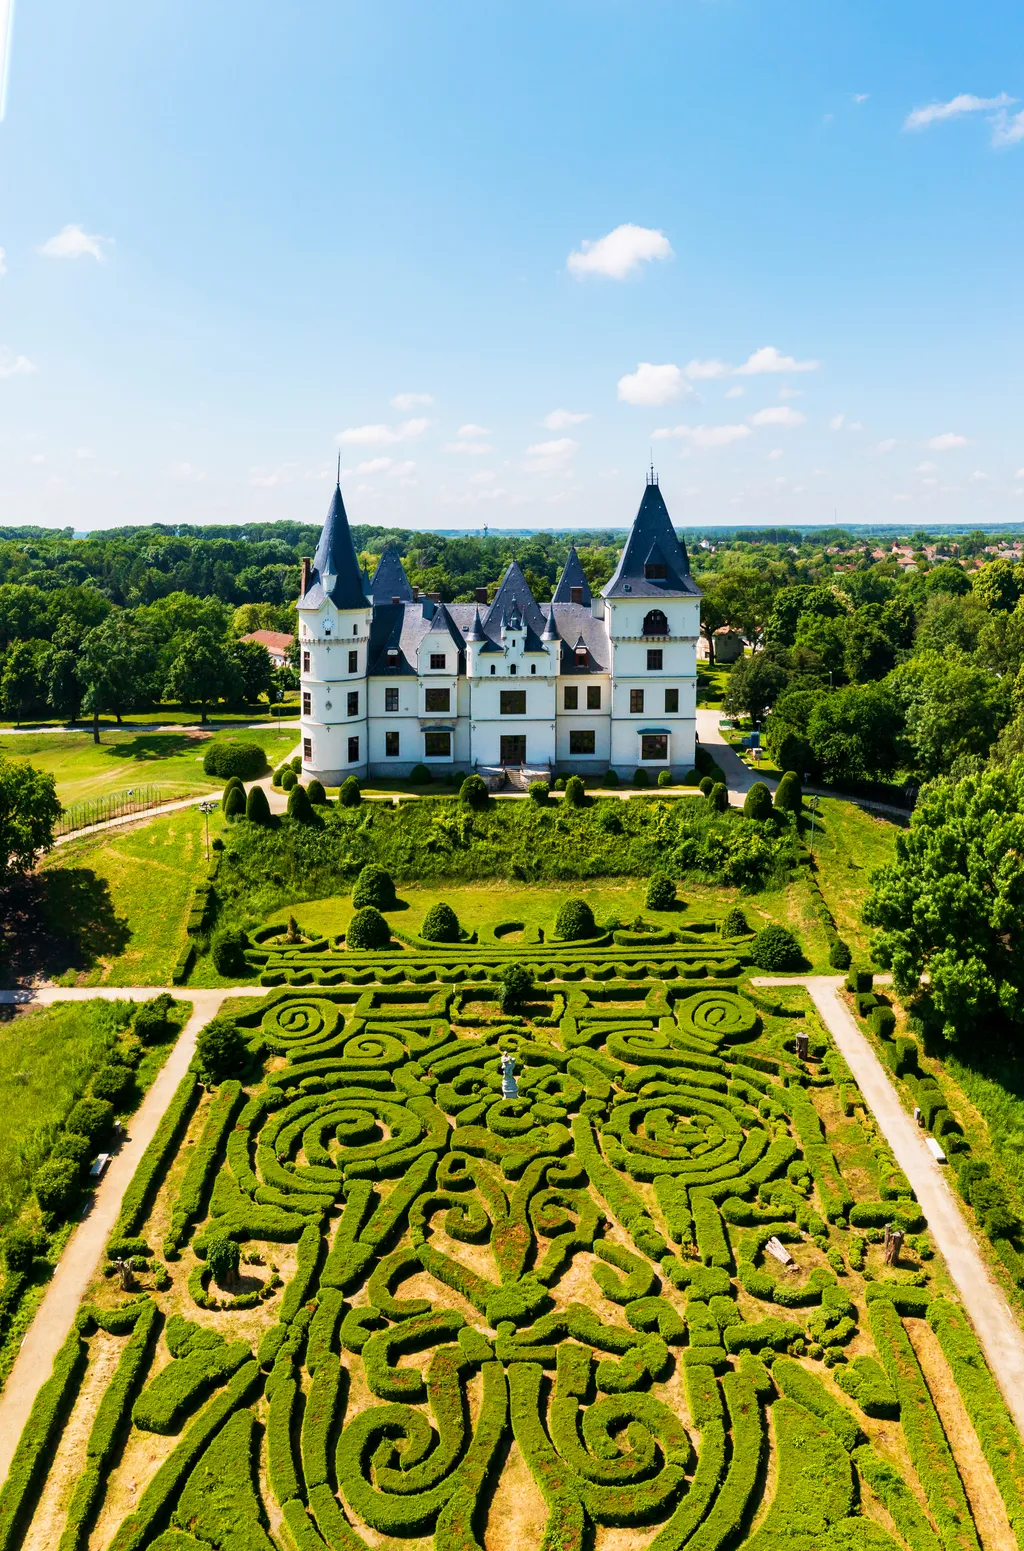 Gyönyörű képeken Magyarország legszebb palotái, kastély, palota, épület, tiszadobi kastély, tiszadob 